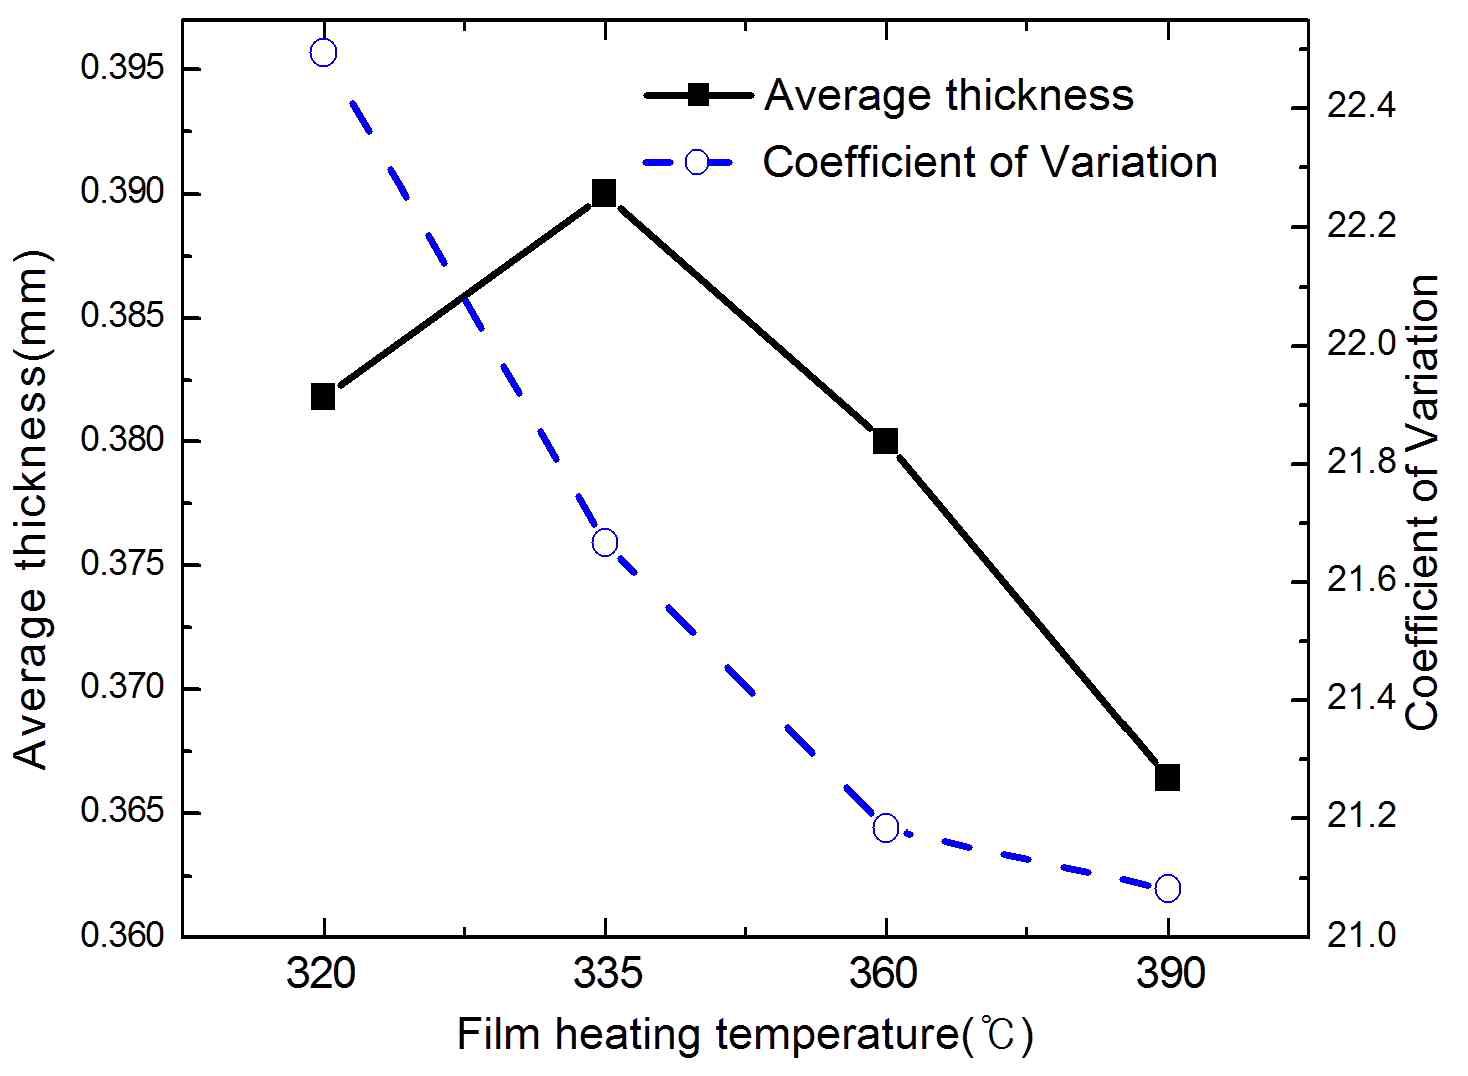 필름 가열온도에 따른 필름 평균두께와 두께변동계수(COV)